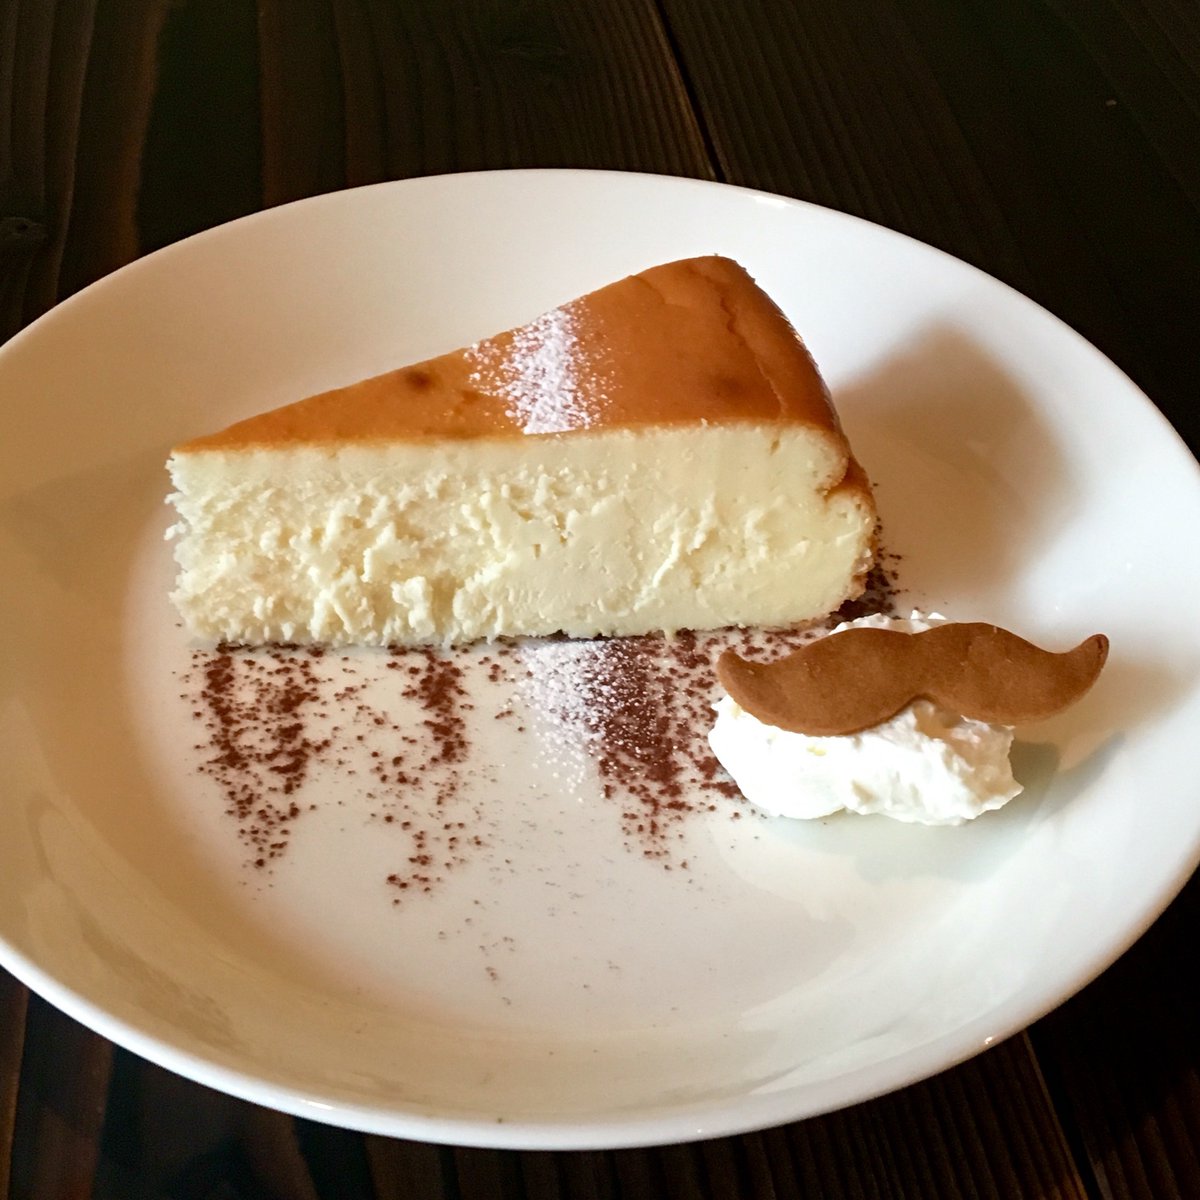 Cafe Schnurrwarz カフェシュヌルバルツ 三鷹駅北口 東京 武蔵野市 しっとりベイクドチーズケーキ スタンバイokです チーズのブレンドで生まれる 絶妙なミルク感のチーズケーキ シュヌルバルツの一番人気です どん と しっかり